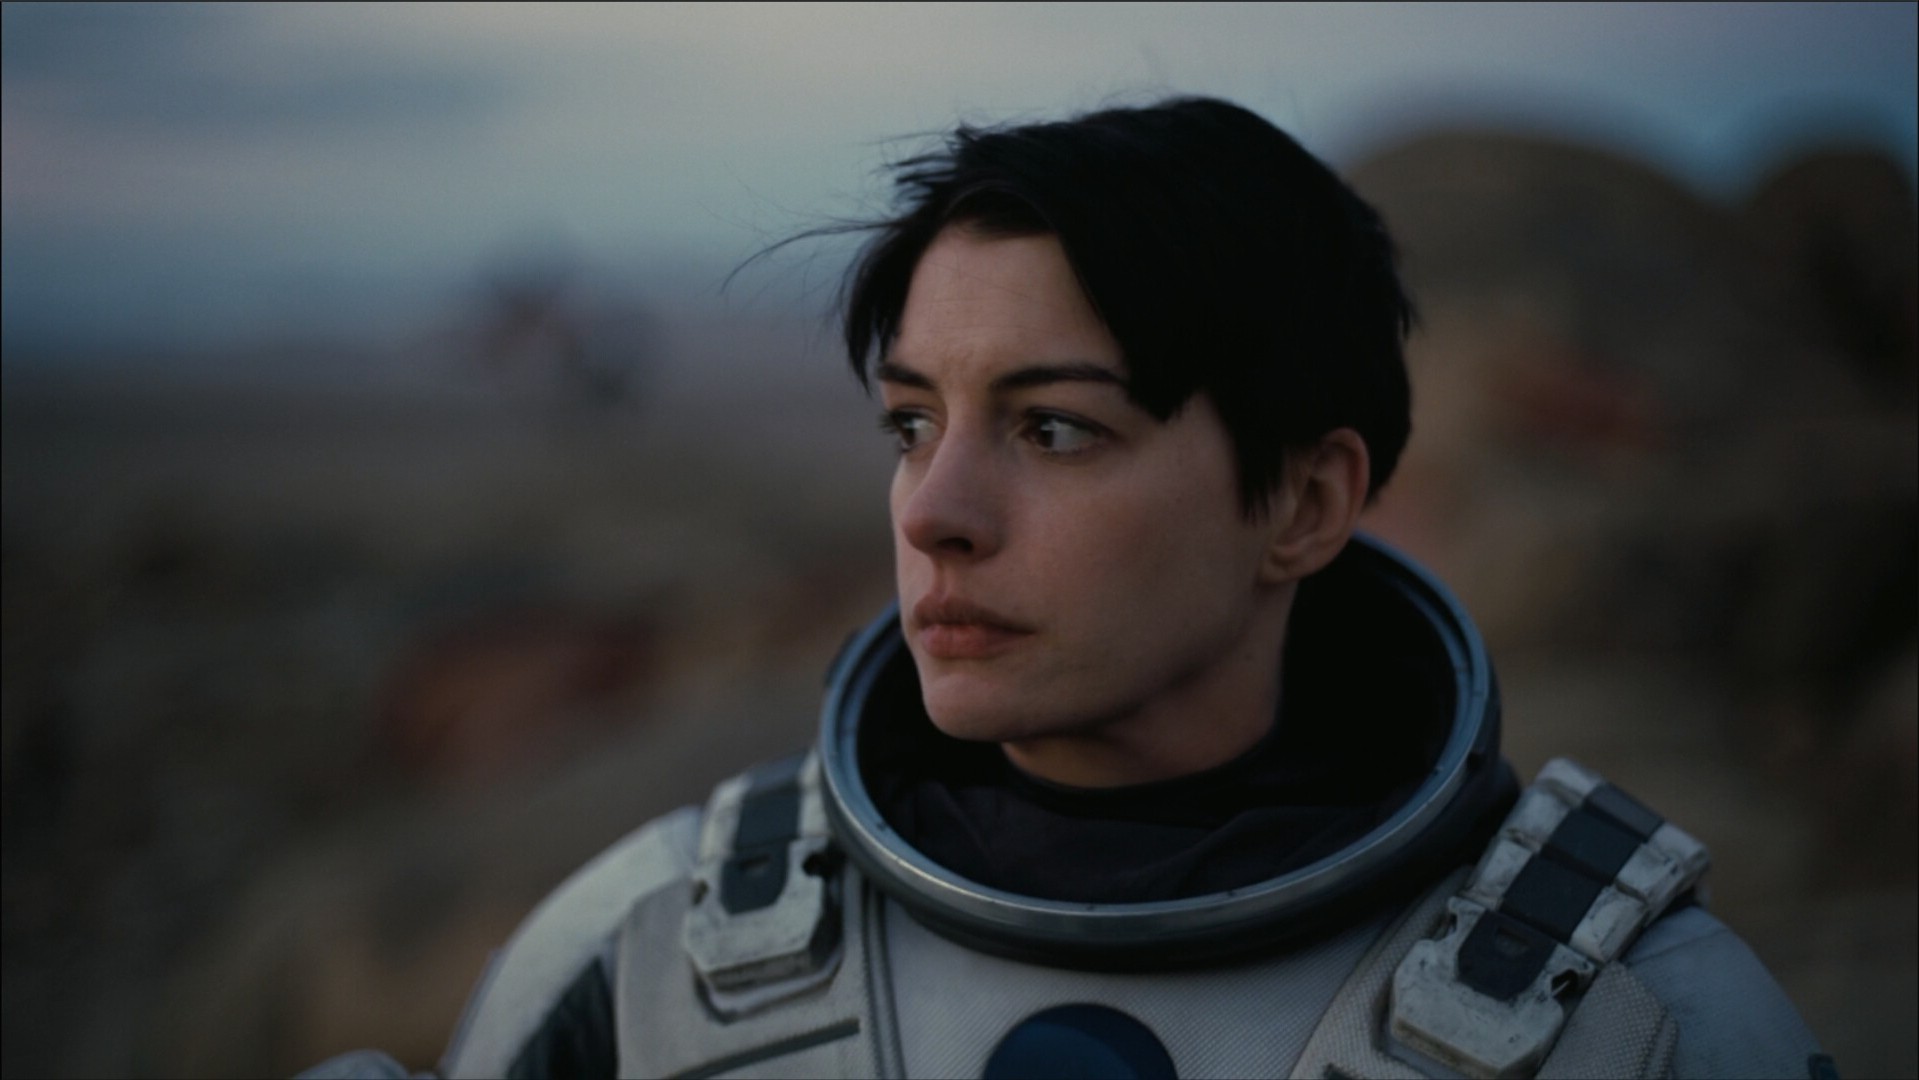 Anne Hathaway, Actress, Interstellar (movie), Spacesuit Wallpaper